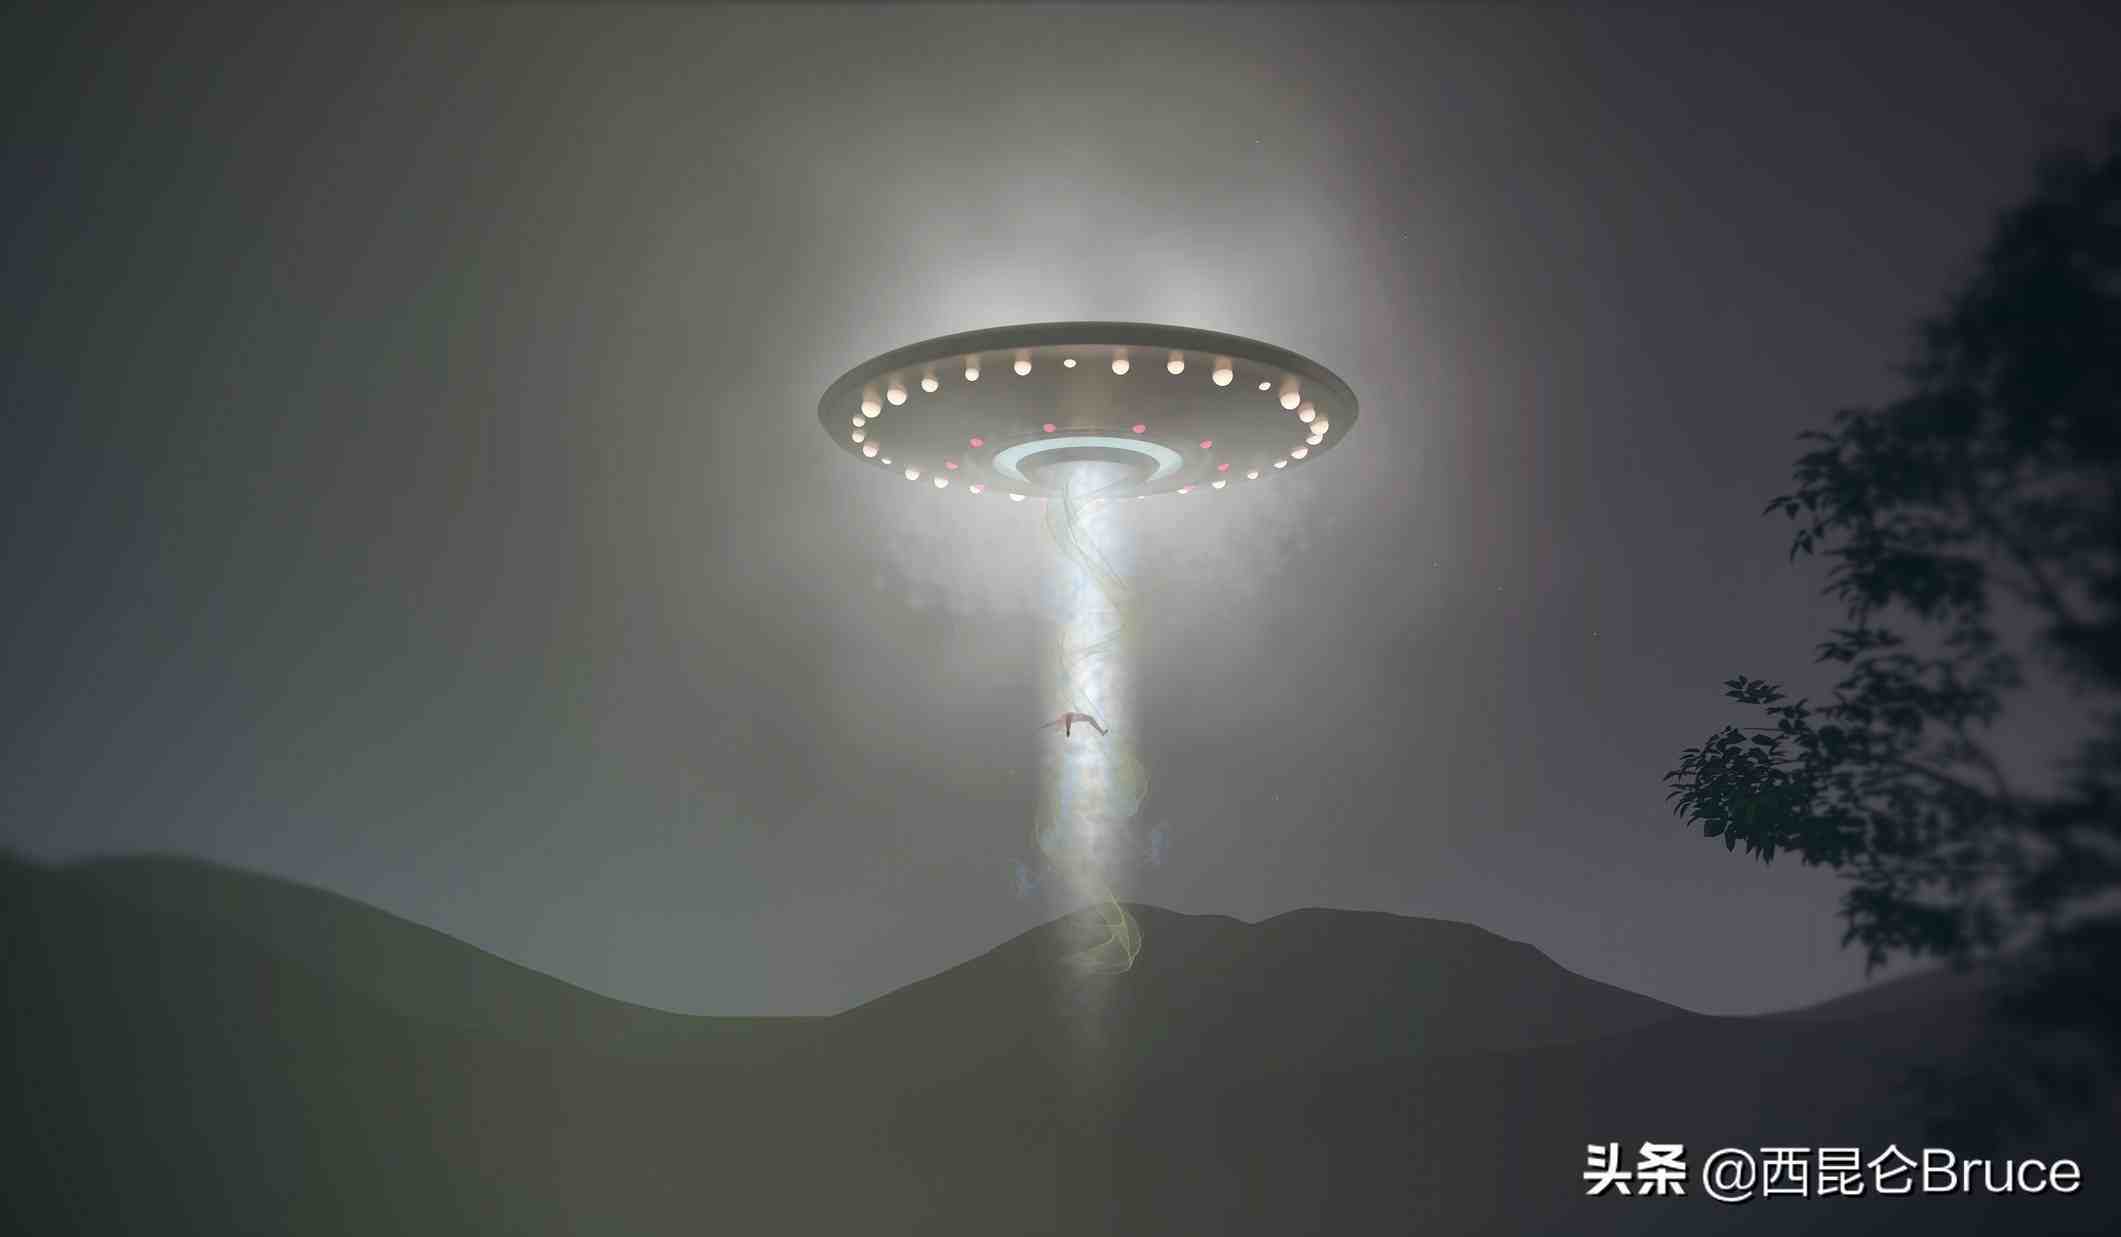 又一起ufo事件?日本上空再次出现神秘白球,日媒:目前身份不明